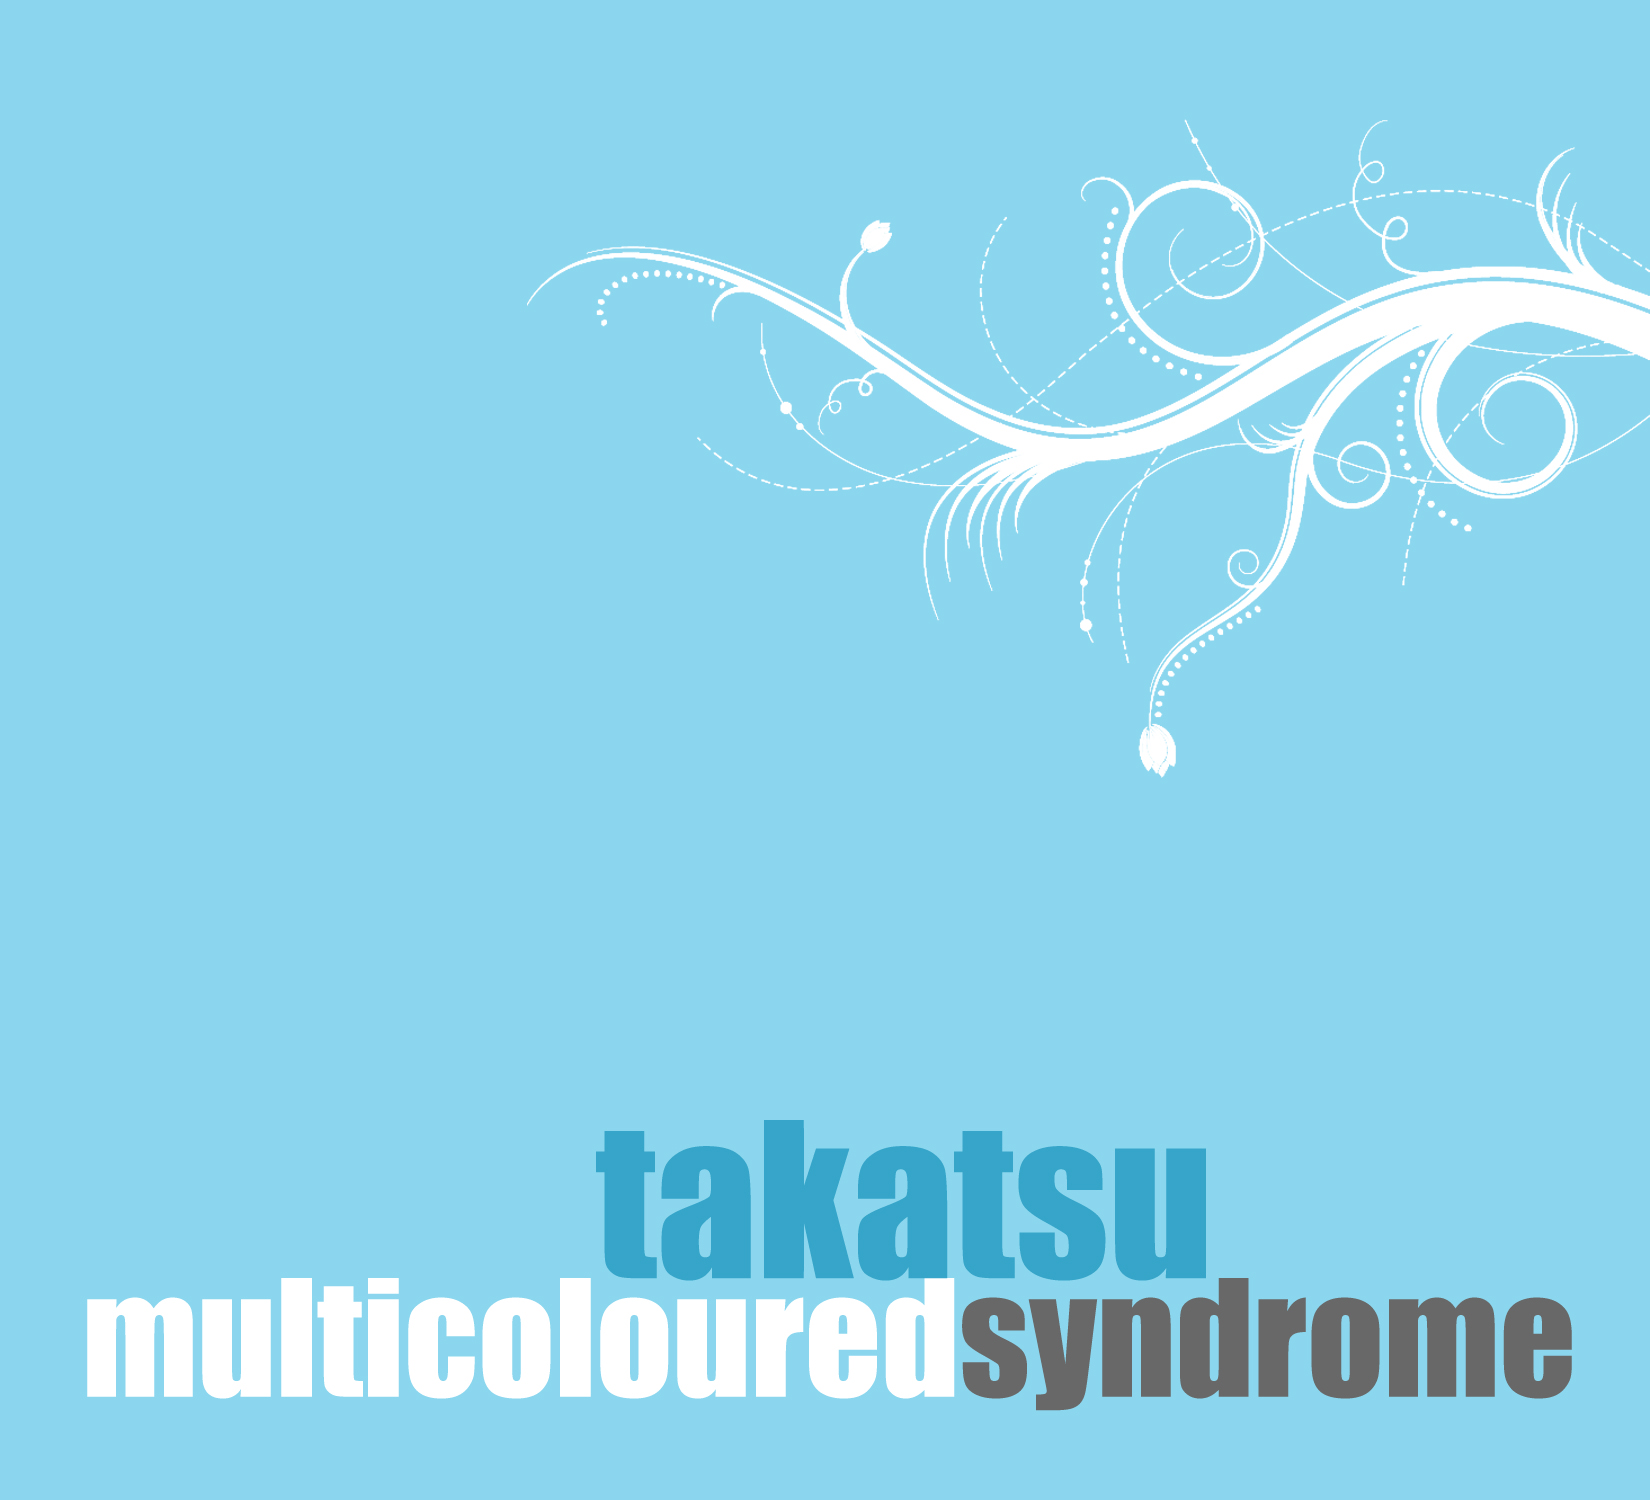 Multicolored Syndrome